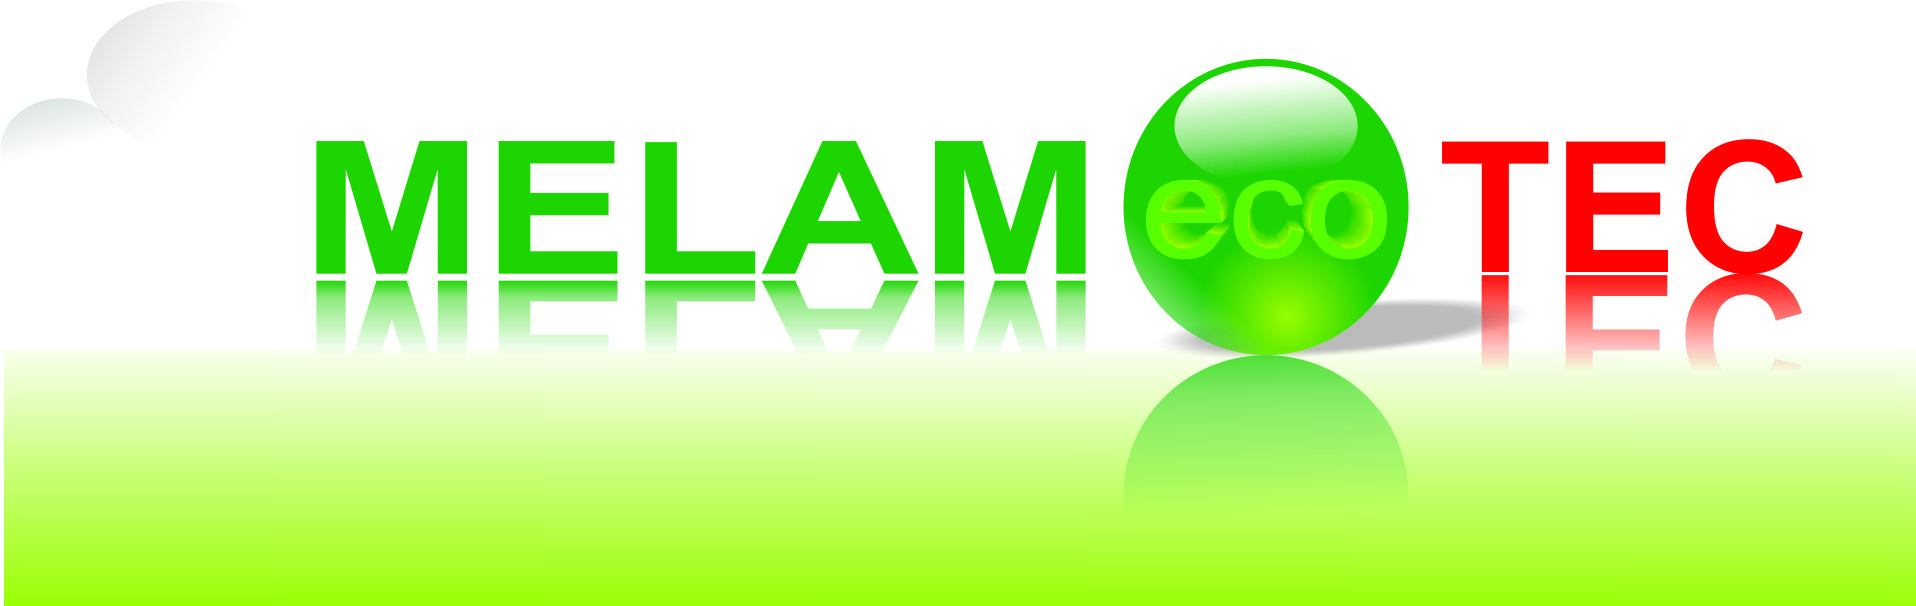 Melam Eco Tec Muebles y Acabados logo